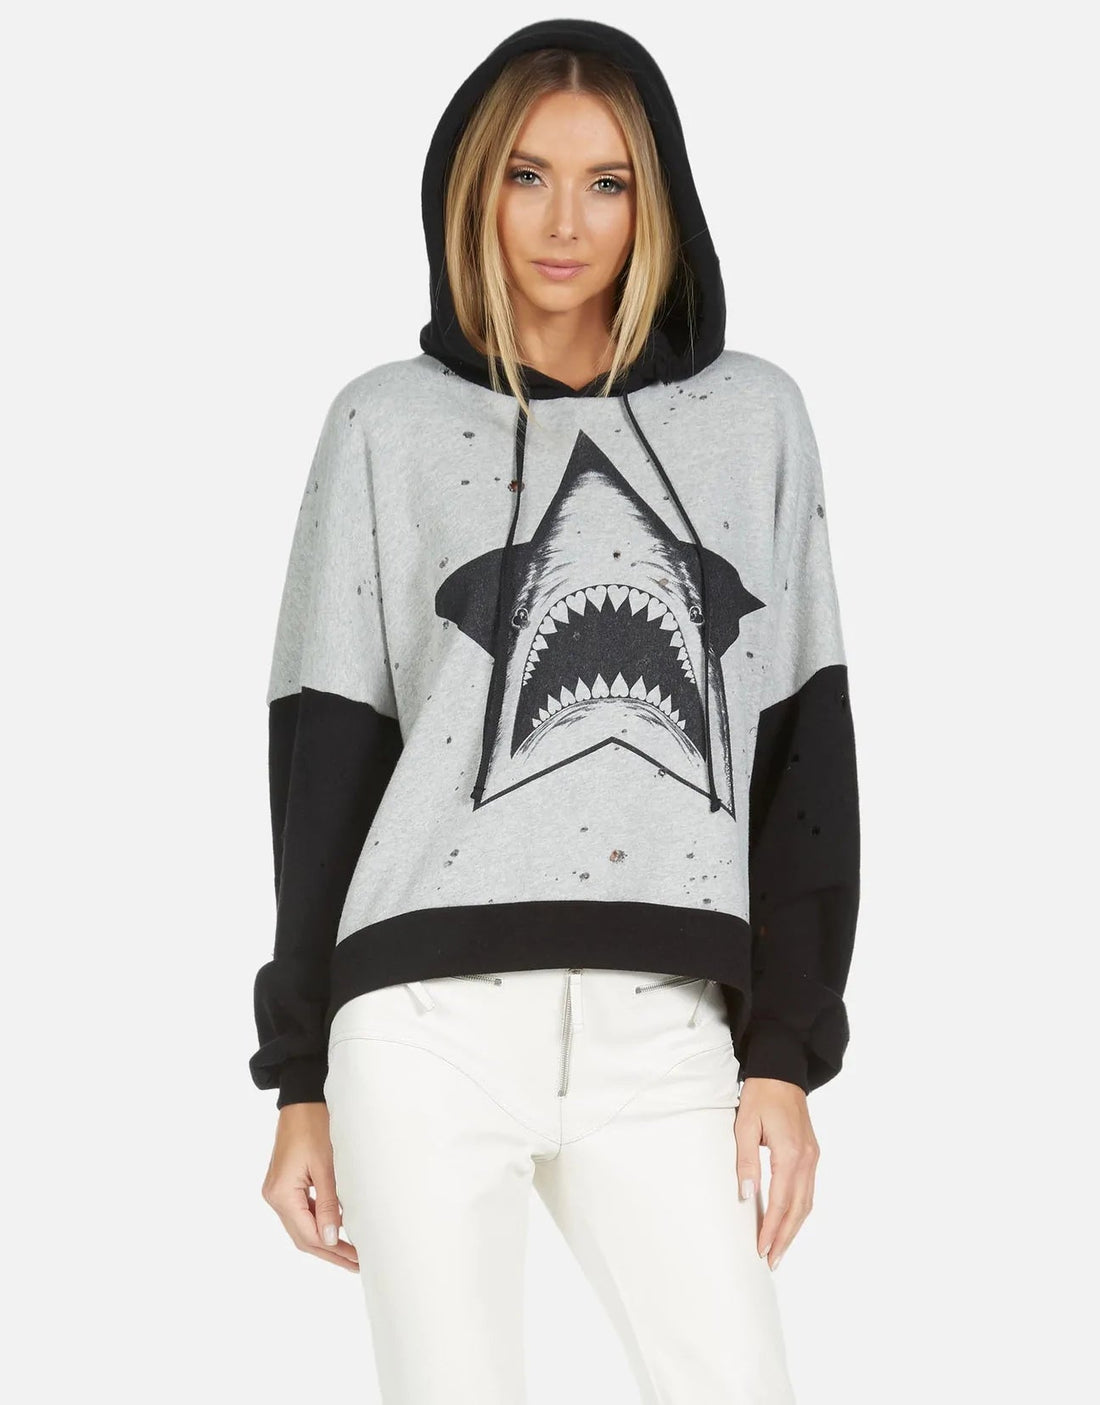 Shop Lauren Moshi Ellie Star Shark Hooded Sweater - Premium Hoodie from Lauren Moshi Online now at Spoiled Brat 